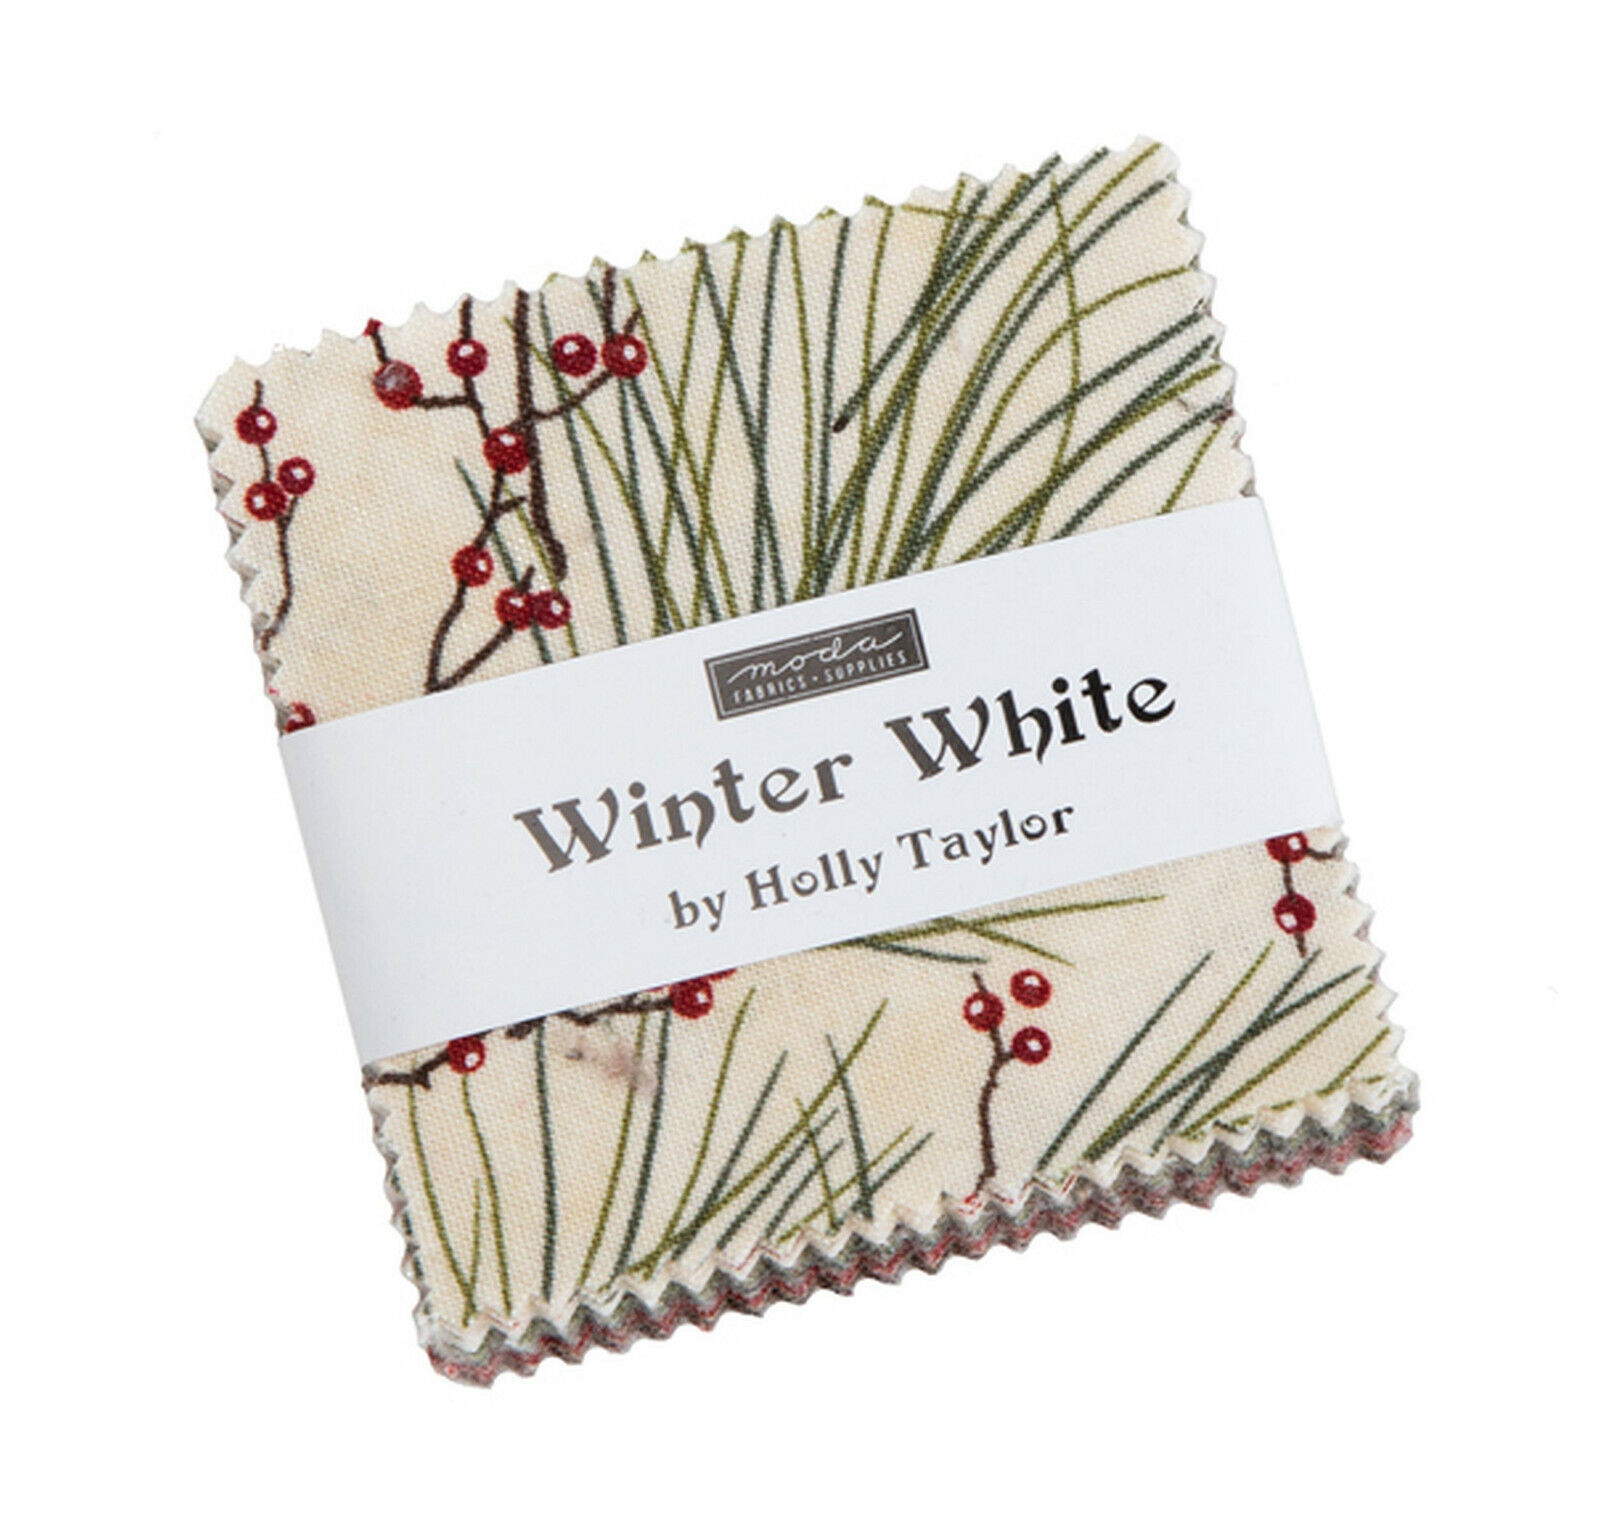 Winter White Moda Mini Charm Pack 42 100% Cotton 2.5" Precut Quilt